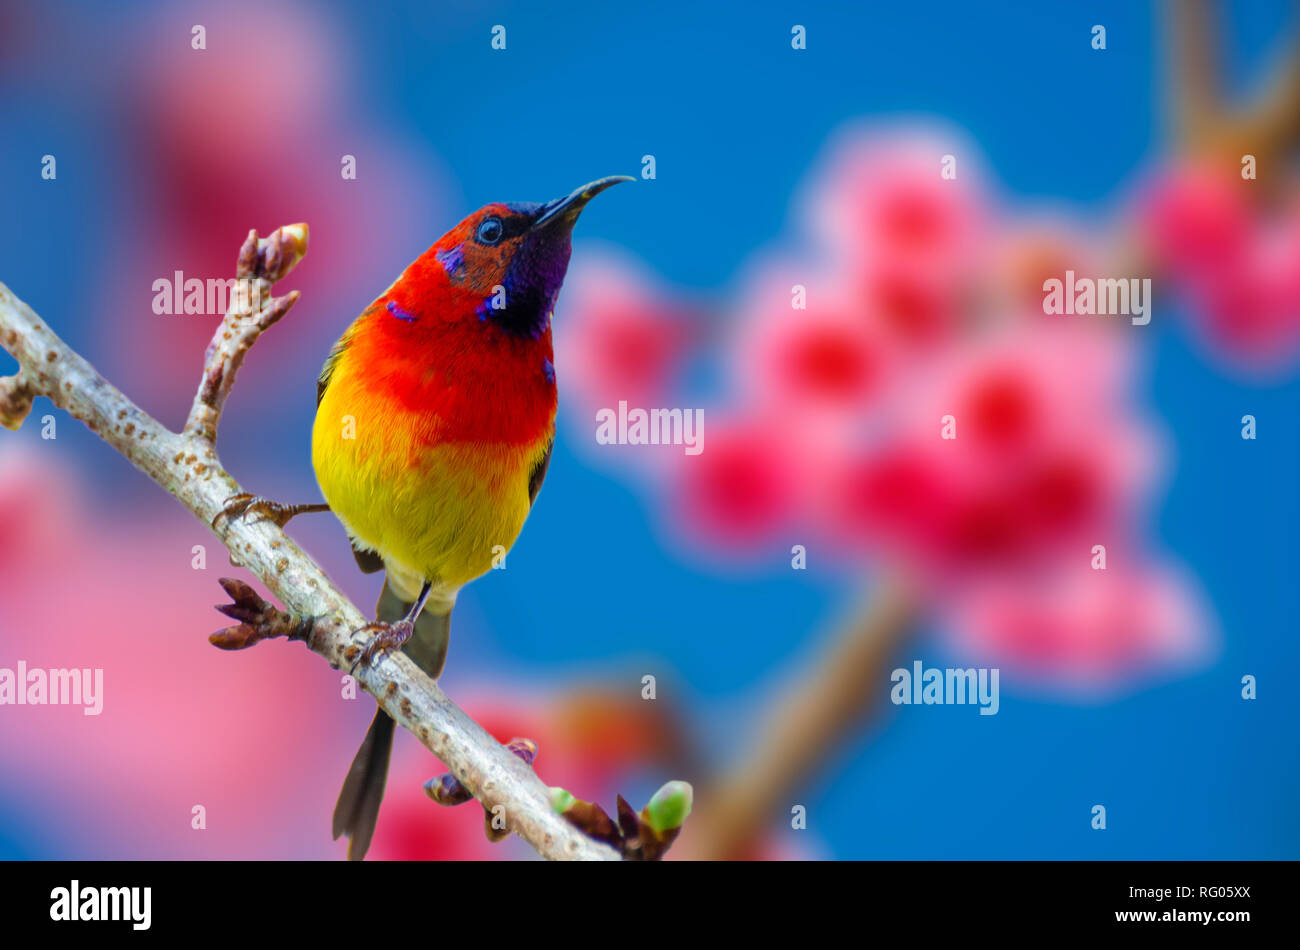 Oiseau rouge fond bleu perché sur les branches Sakura Banque D'Images